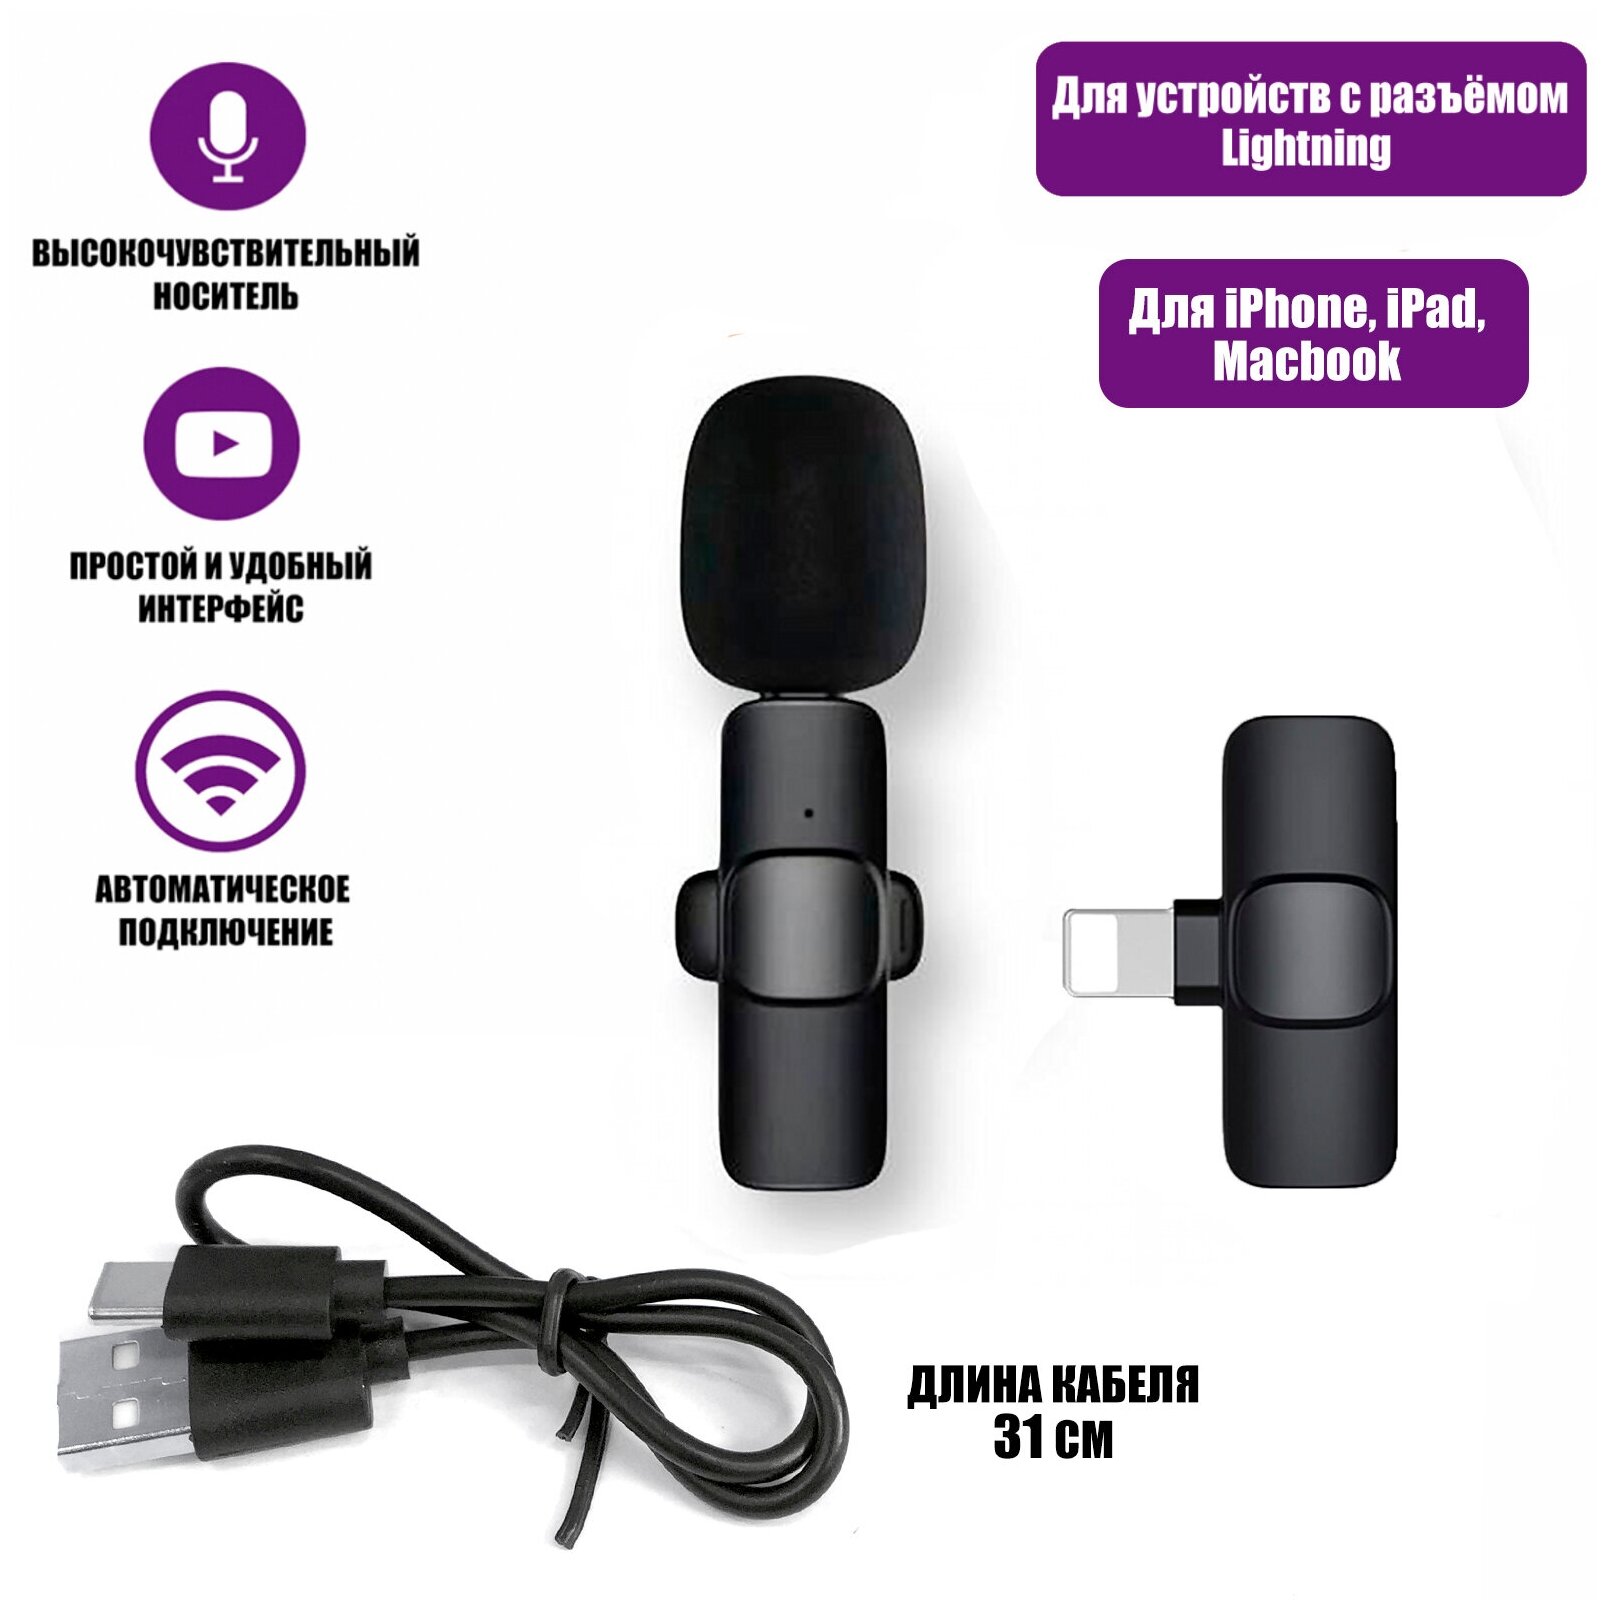 Беспроводной петличный микрофон K9 для Iphone и других устройств с разъемом Lightning